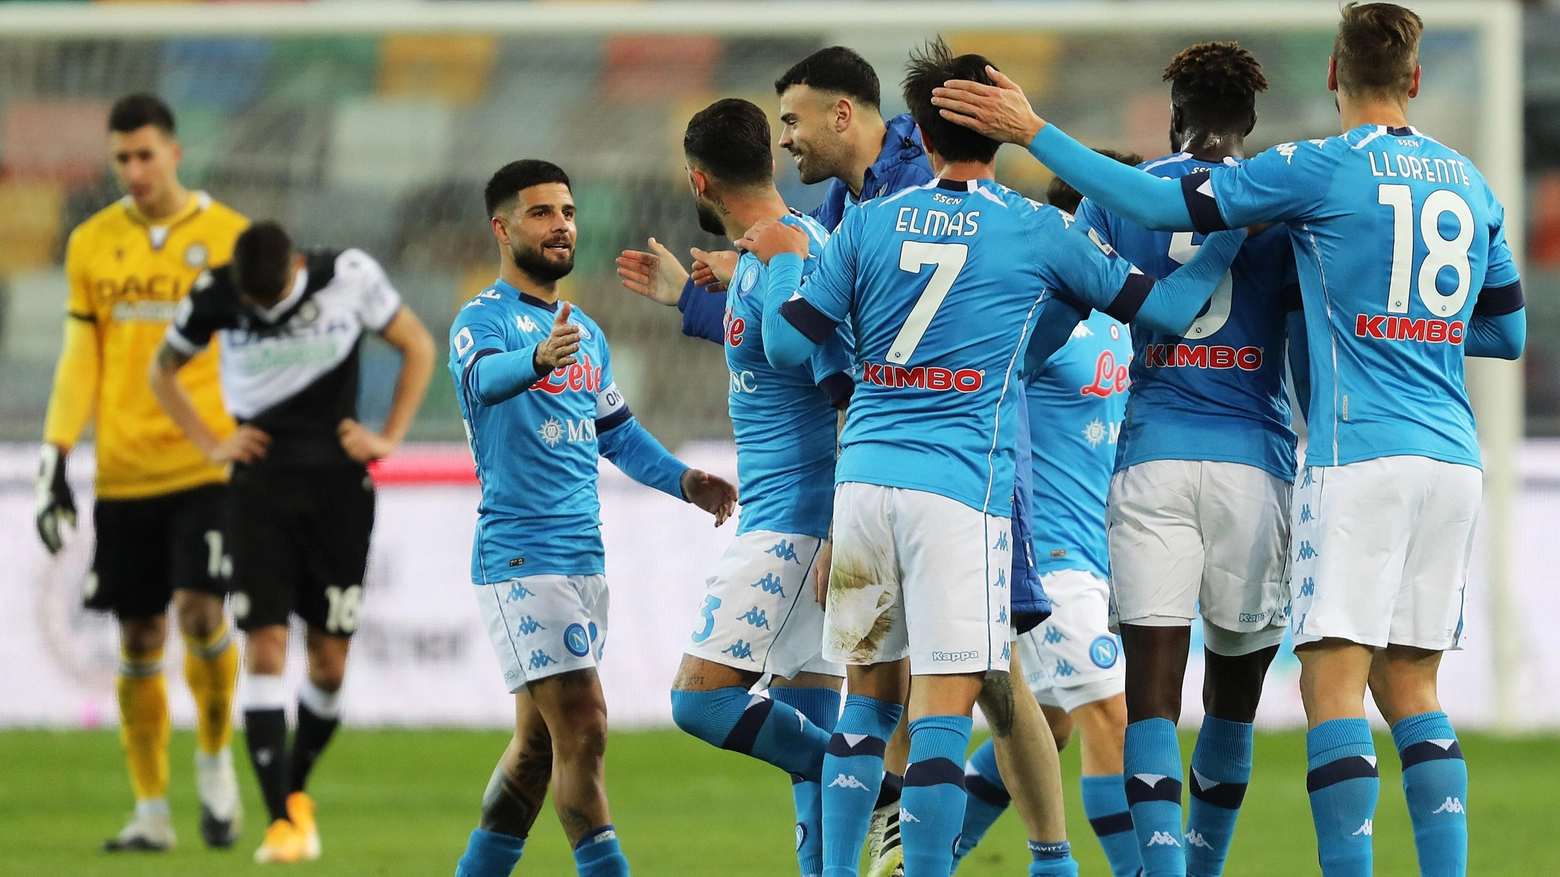 L'esultanza degli azzurri contro l'Udinese (Ansa)